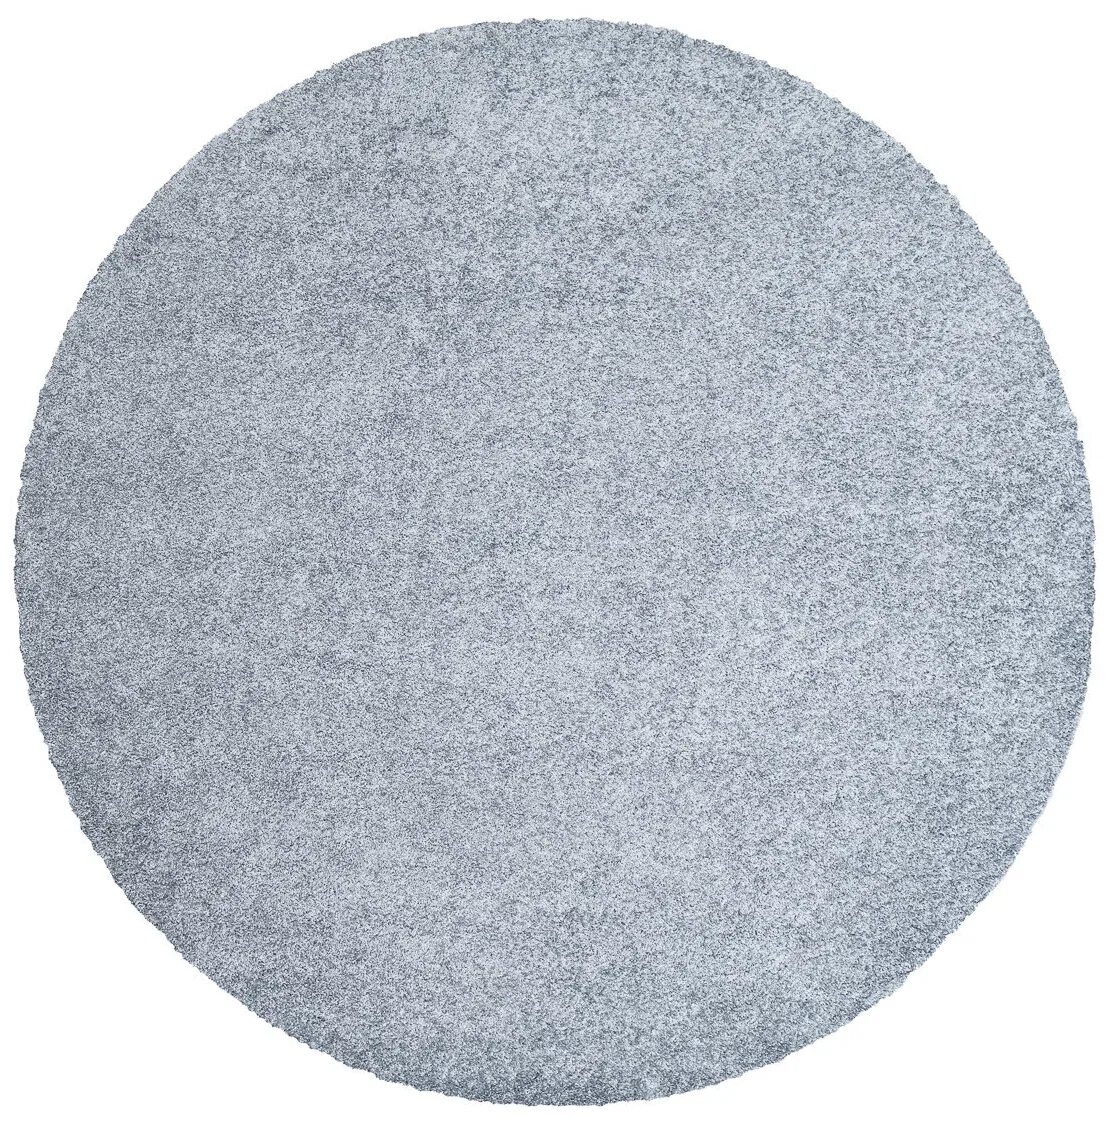 Ковер sense bs2284-b230 круг. Ковер круглый 2х2 однотонный серый. Круг 80. Круг 8мм (2.9-3м).